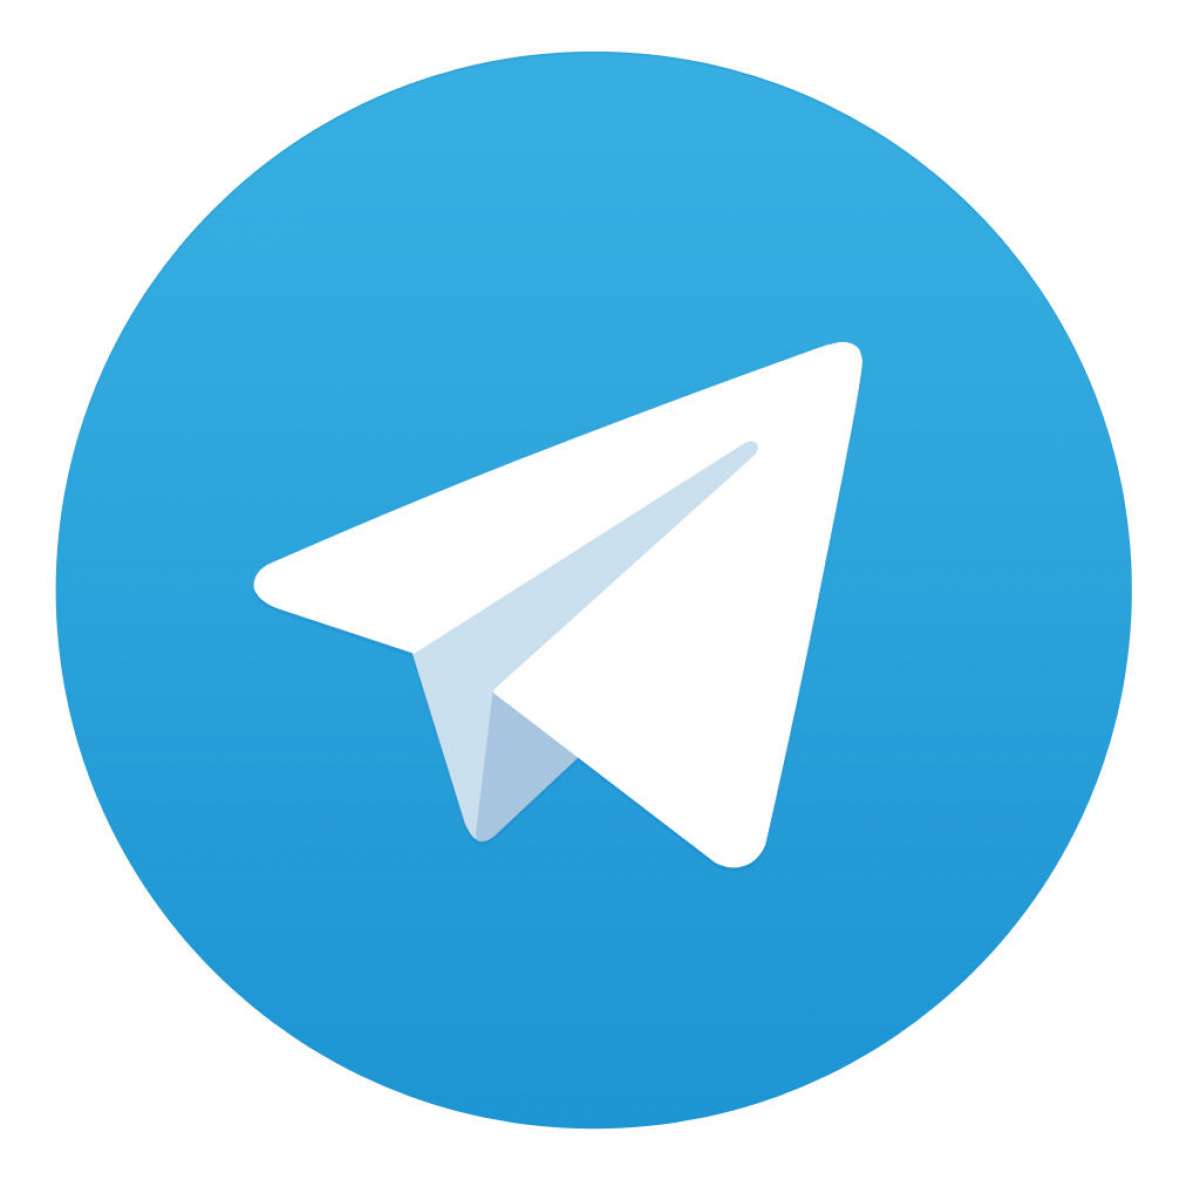 قانون نوشت: سیاست ورزی با تلگرام